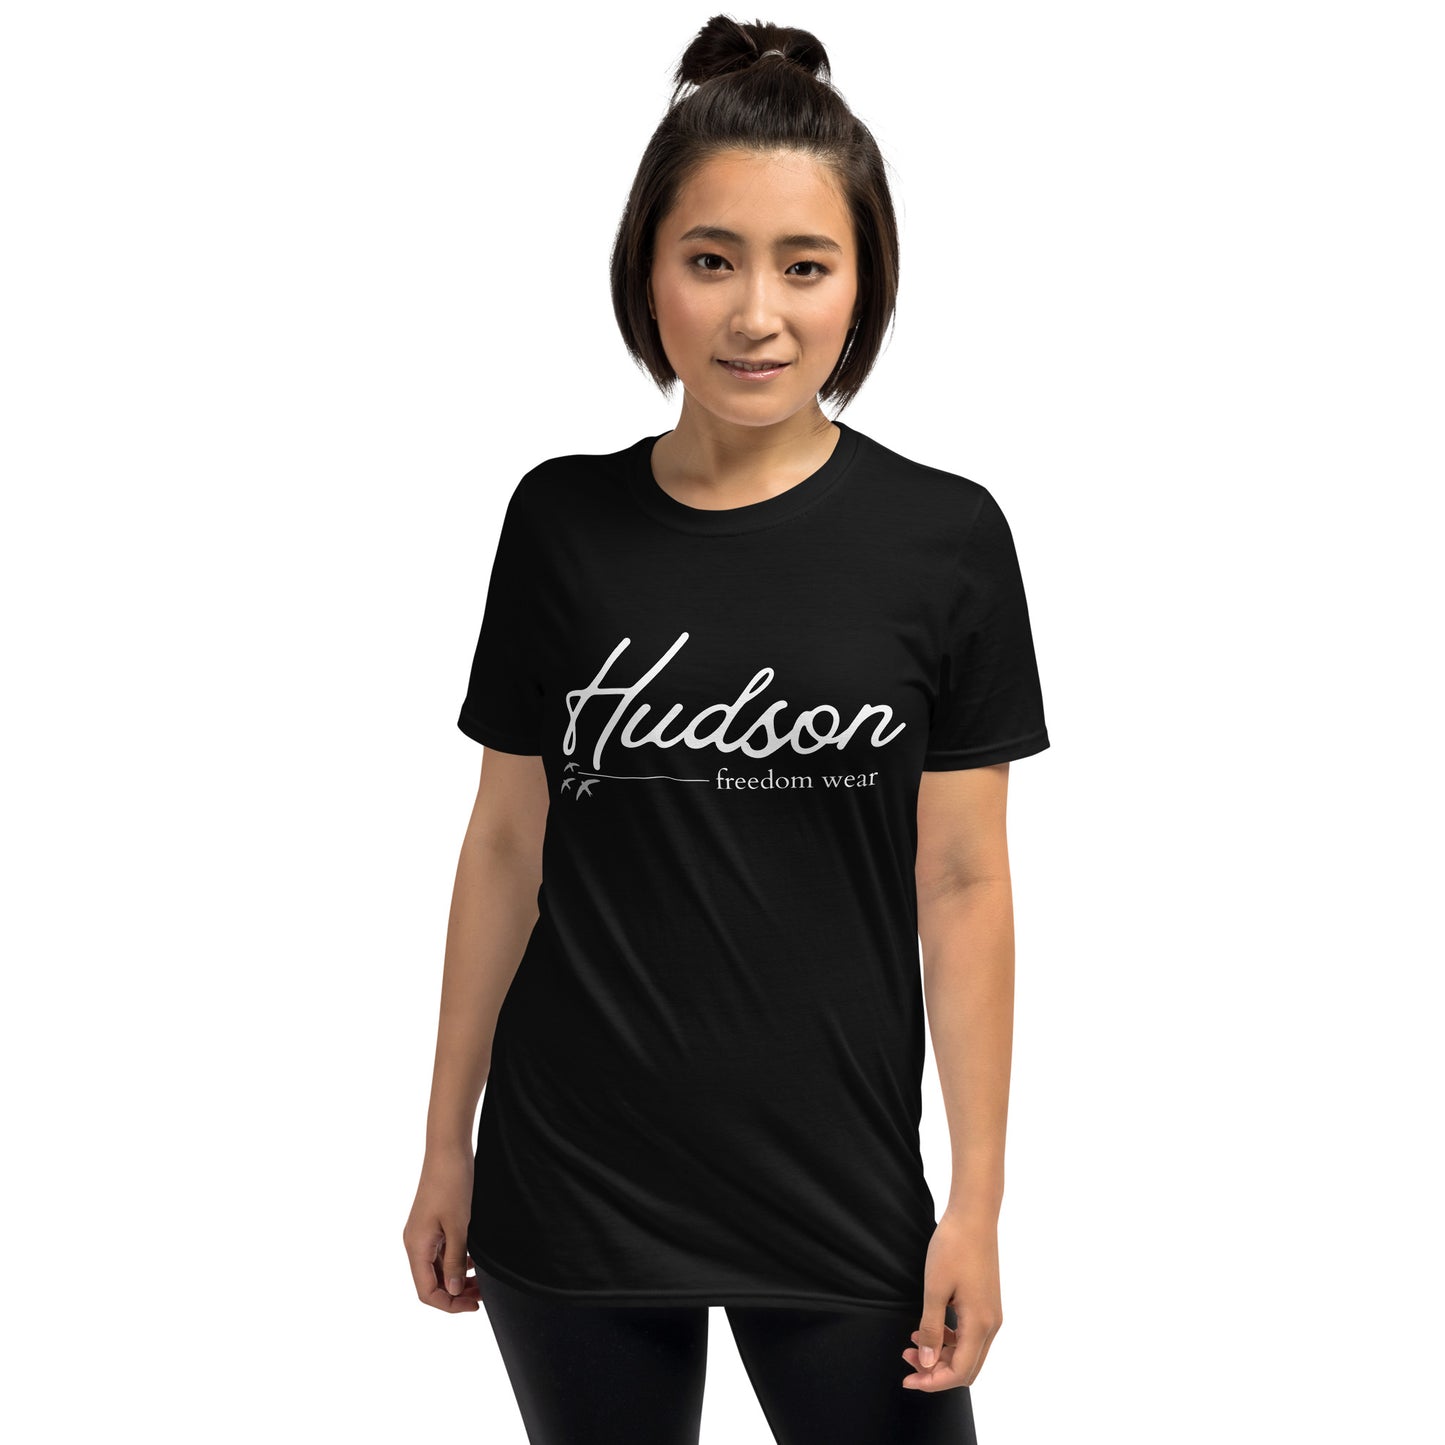 Hudson Signature Short-Sleeve Unisex T-Shirt